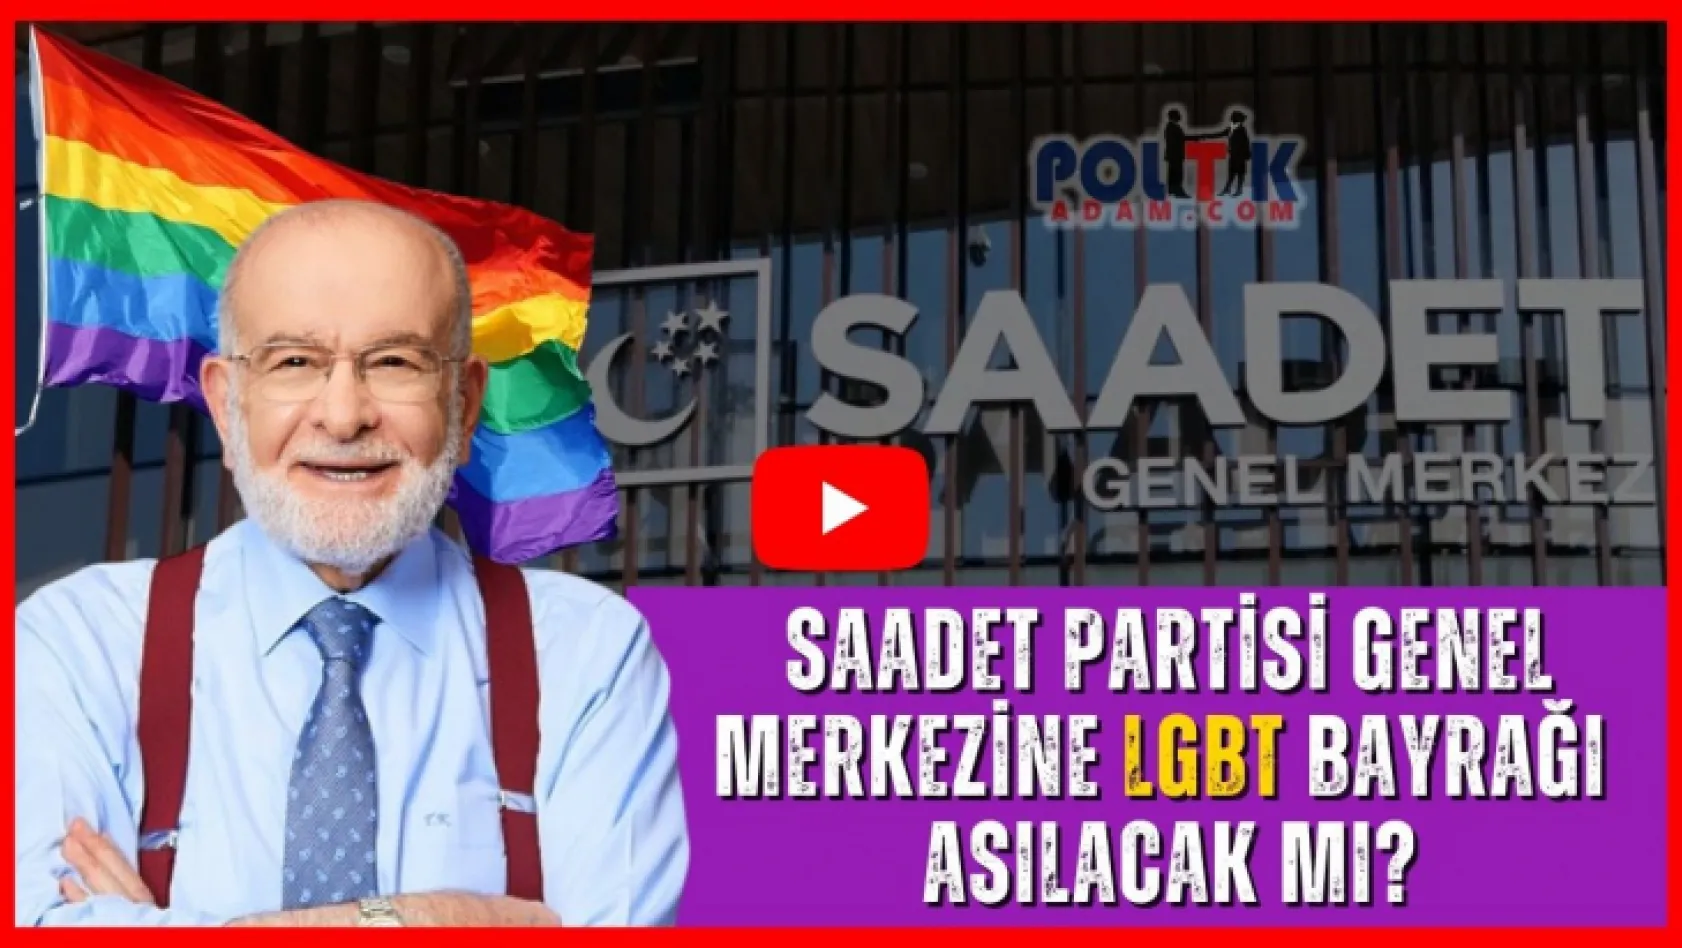 Saadet Partisinin Genel Merkezinde LGBT Bayrağı?